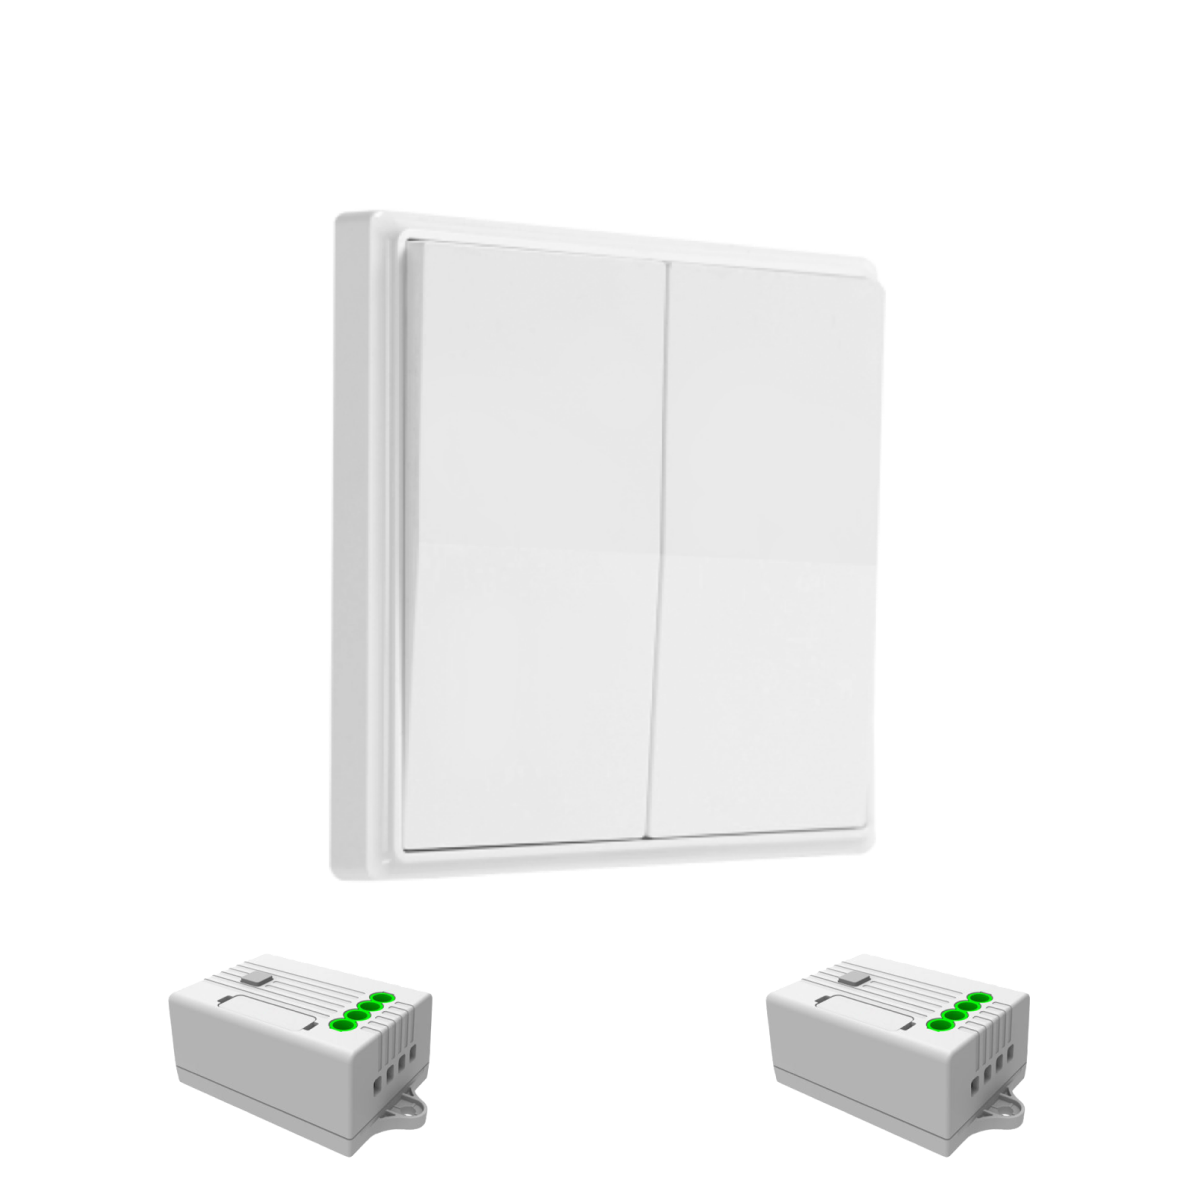 Беспроводной выключатель GRITT Elegance 2кл. белый комплект: 1 выкл., 2 реле 1000Вт